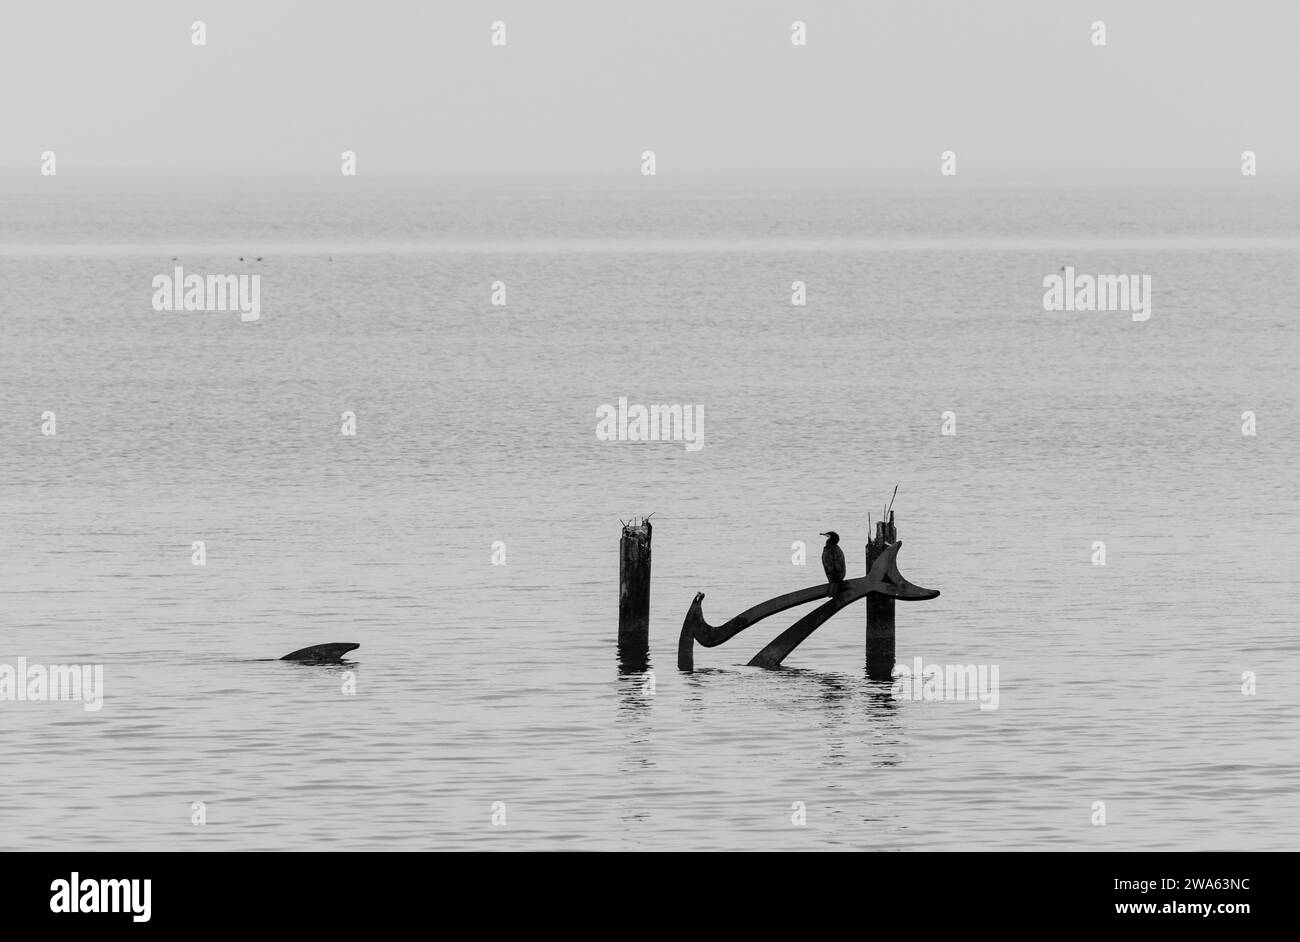 Grado (Italia) mare durante una giornata invernale con una fitta nebbia che rende l'ambiente suggestivo e mistico. In lontananza, un cormorano arroccato. Foto Stock